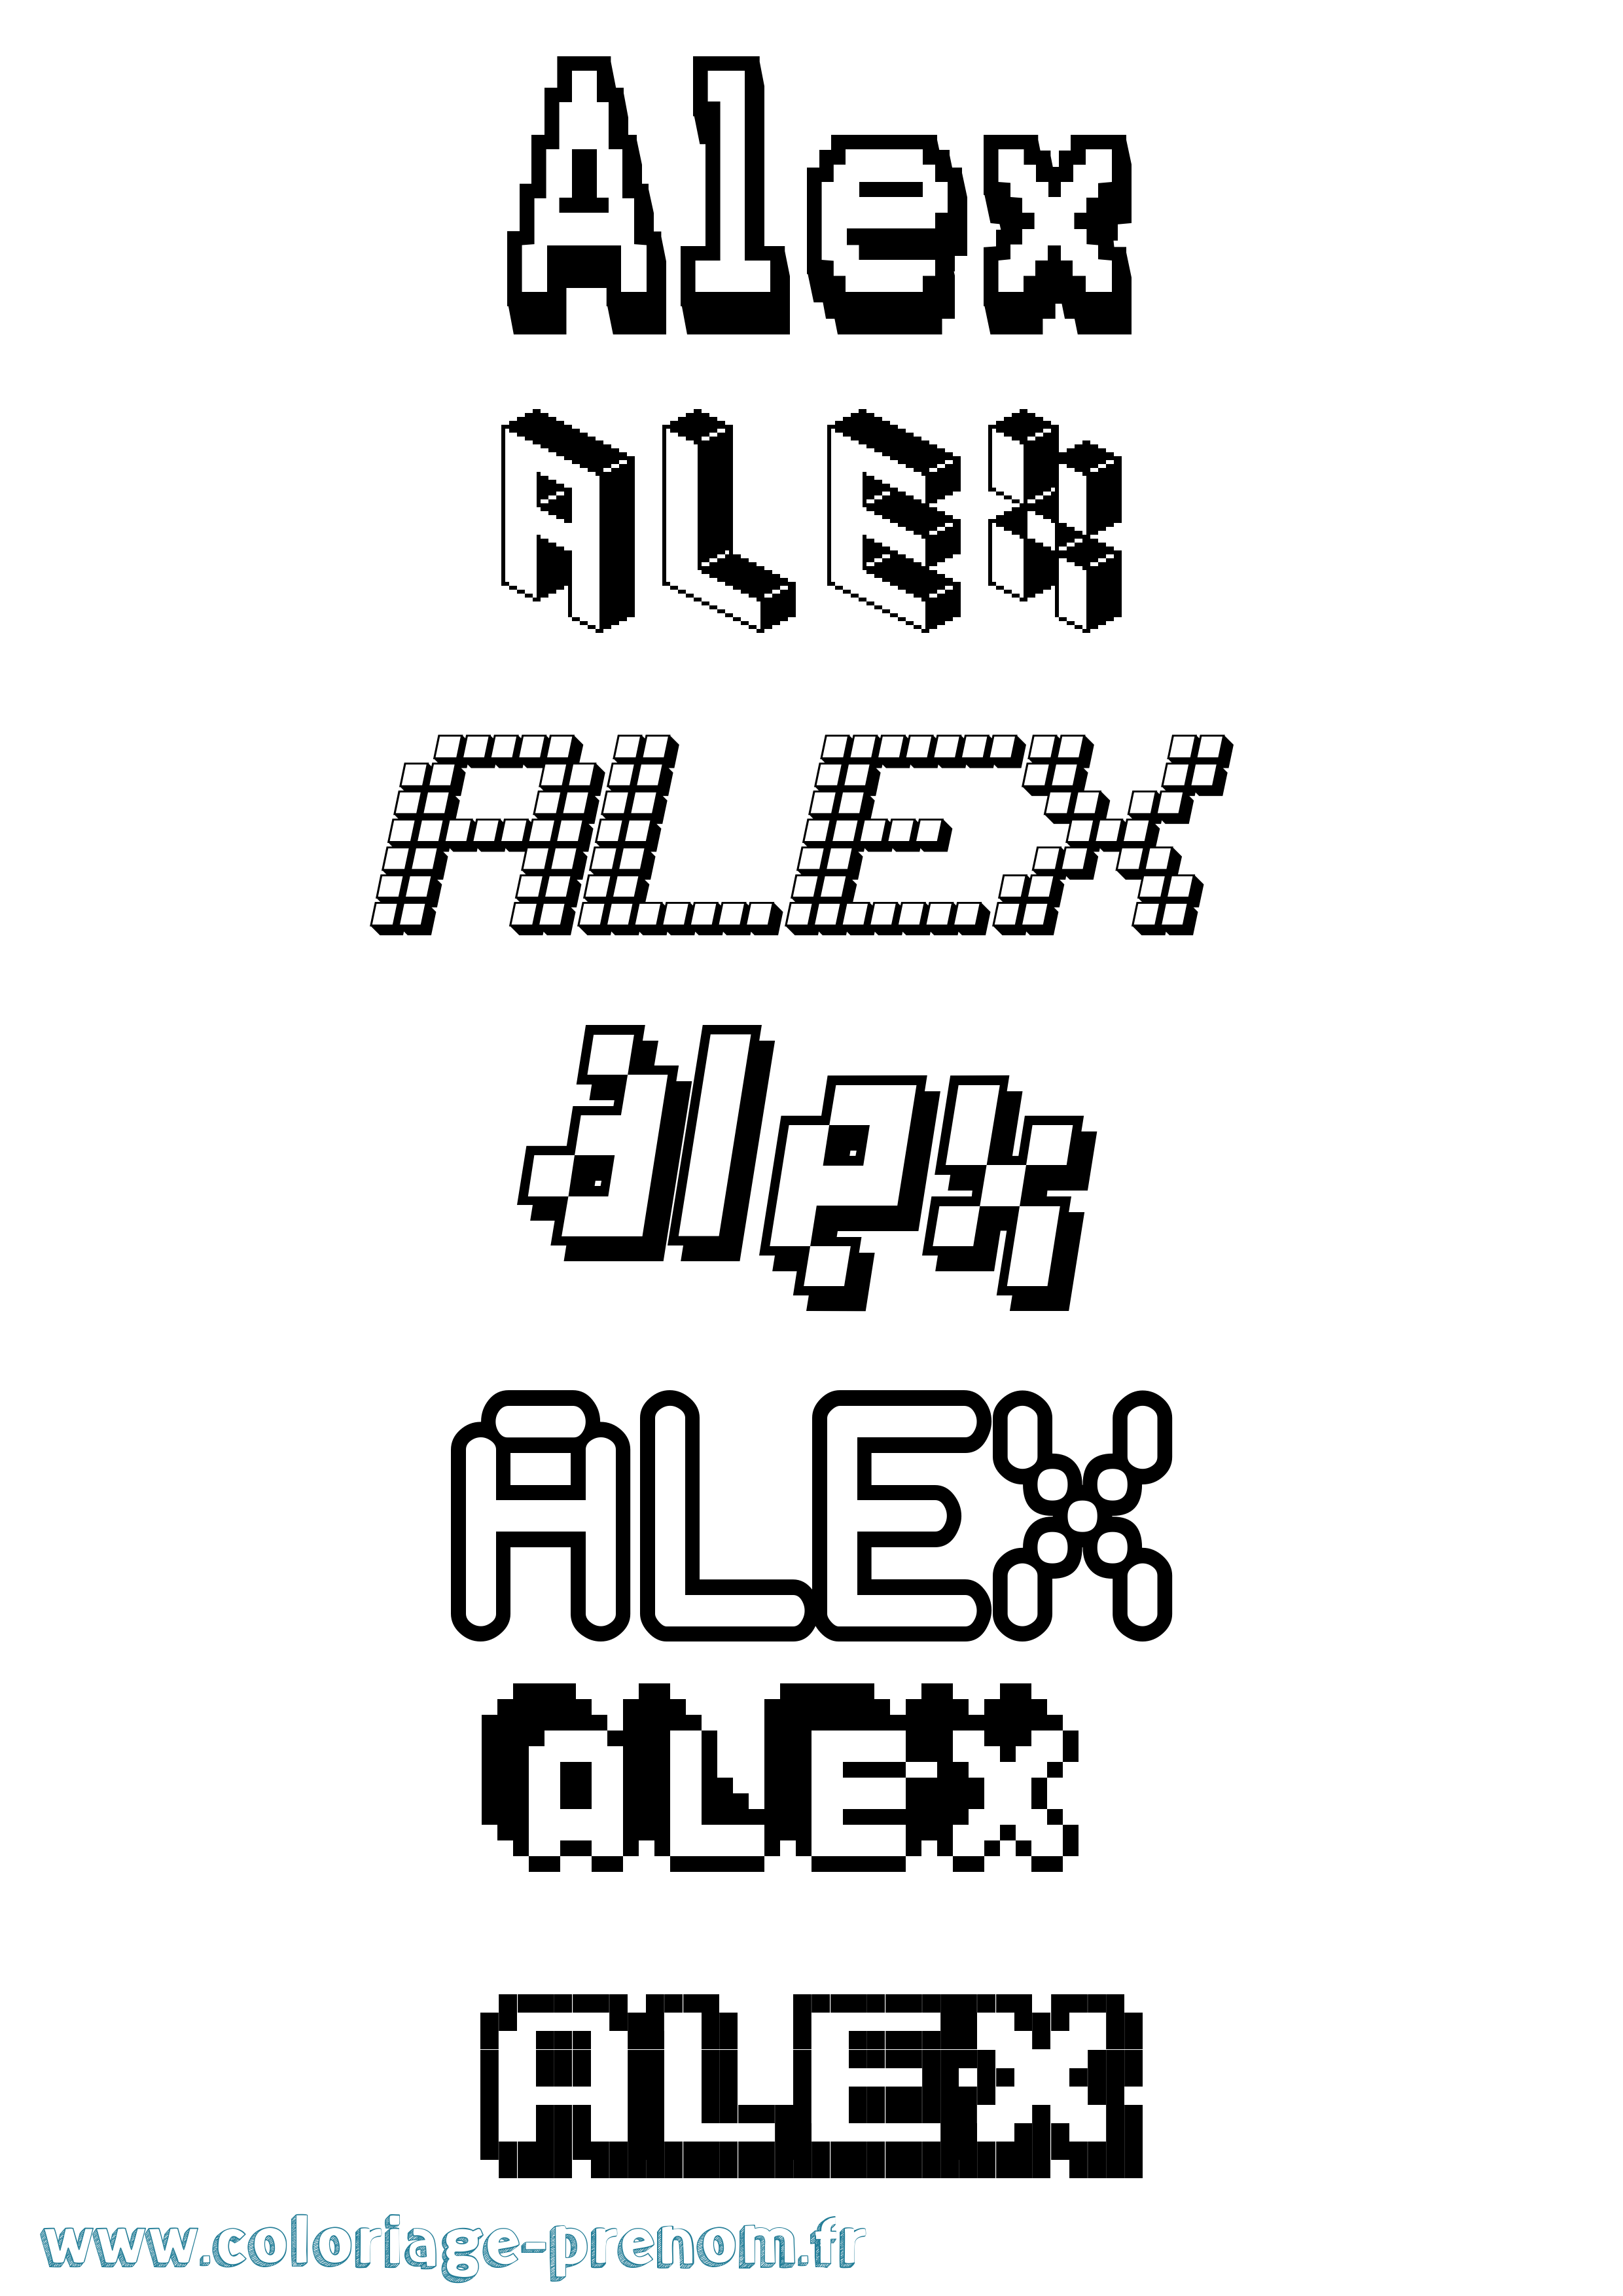 Coloriage prénom Alex